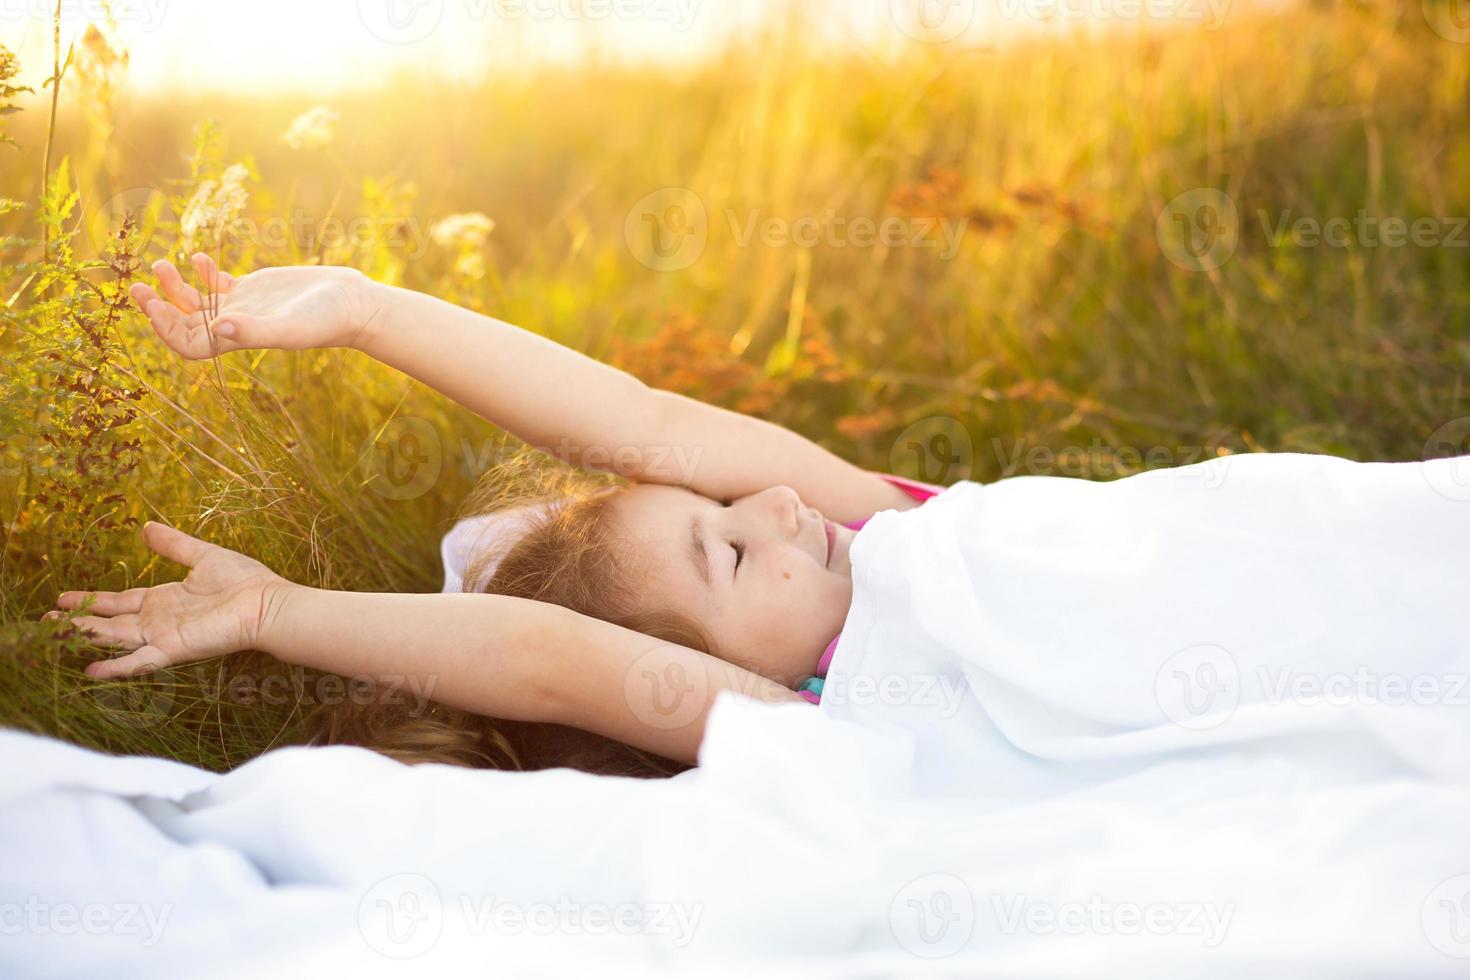 meisje slaapt op bed in gras, zoete stukken en gaapt slaperig, goedemorgen in de frisse lucht. milieuvriendelijk, gezond slapen, voordelen van ventilatie, verharding, schone natuur, ecologie, gezondheid van kinderen foto